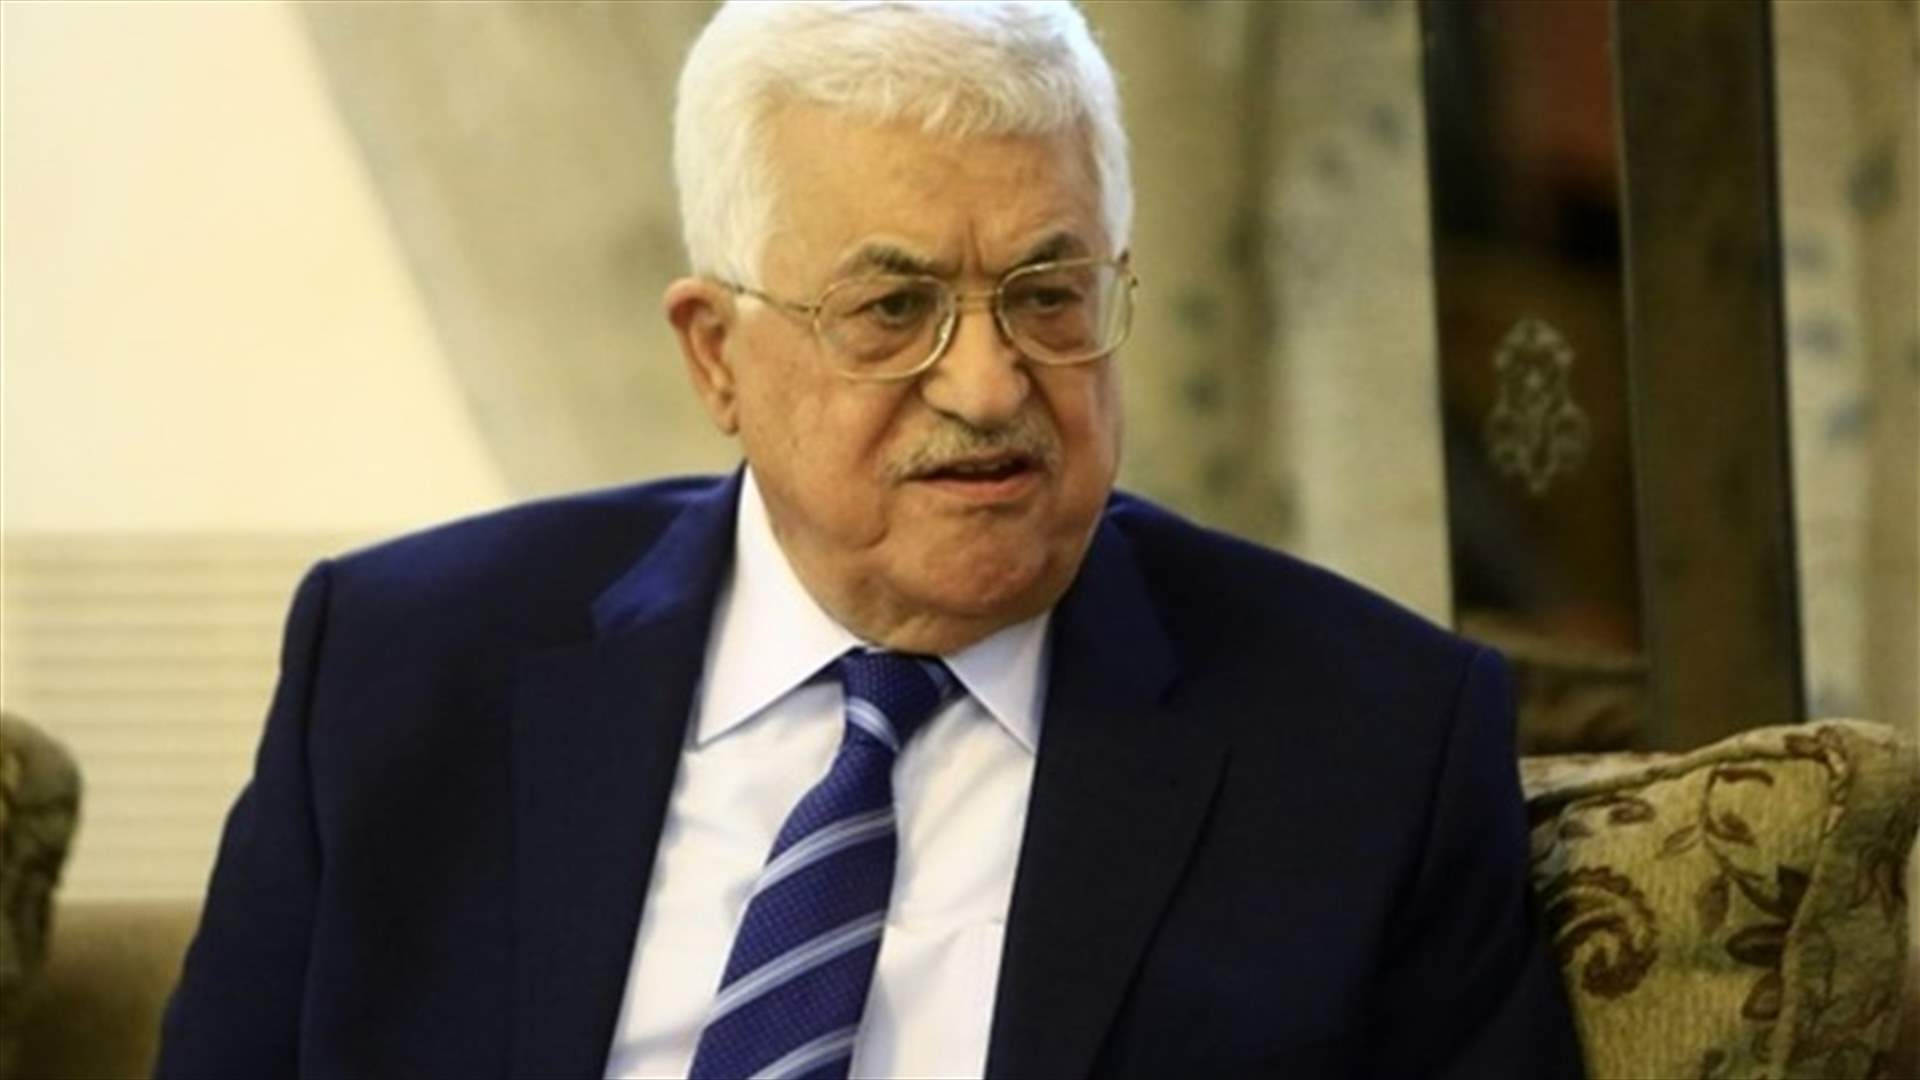 Palestinian leader Abbas was KGB spy in 1980s - Israeli researchers